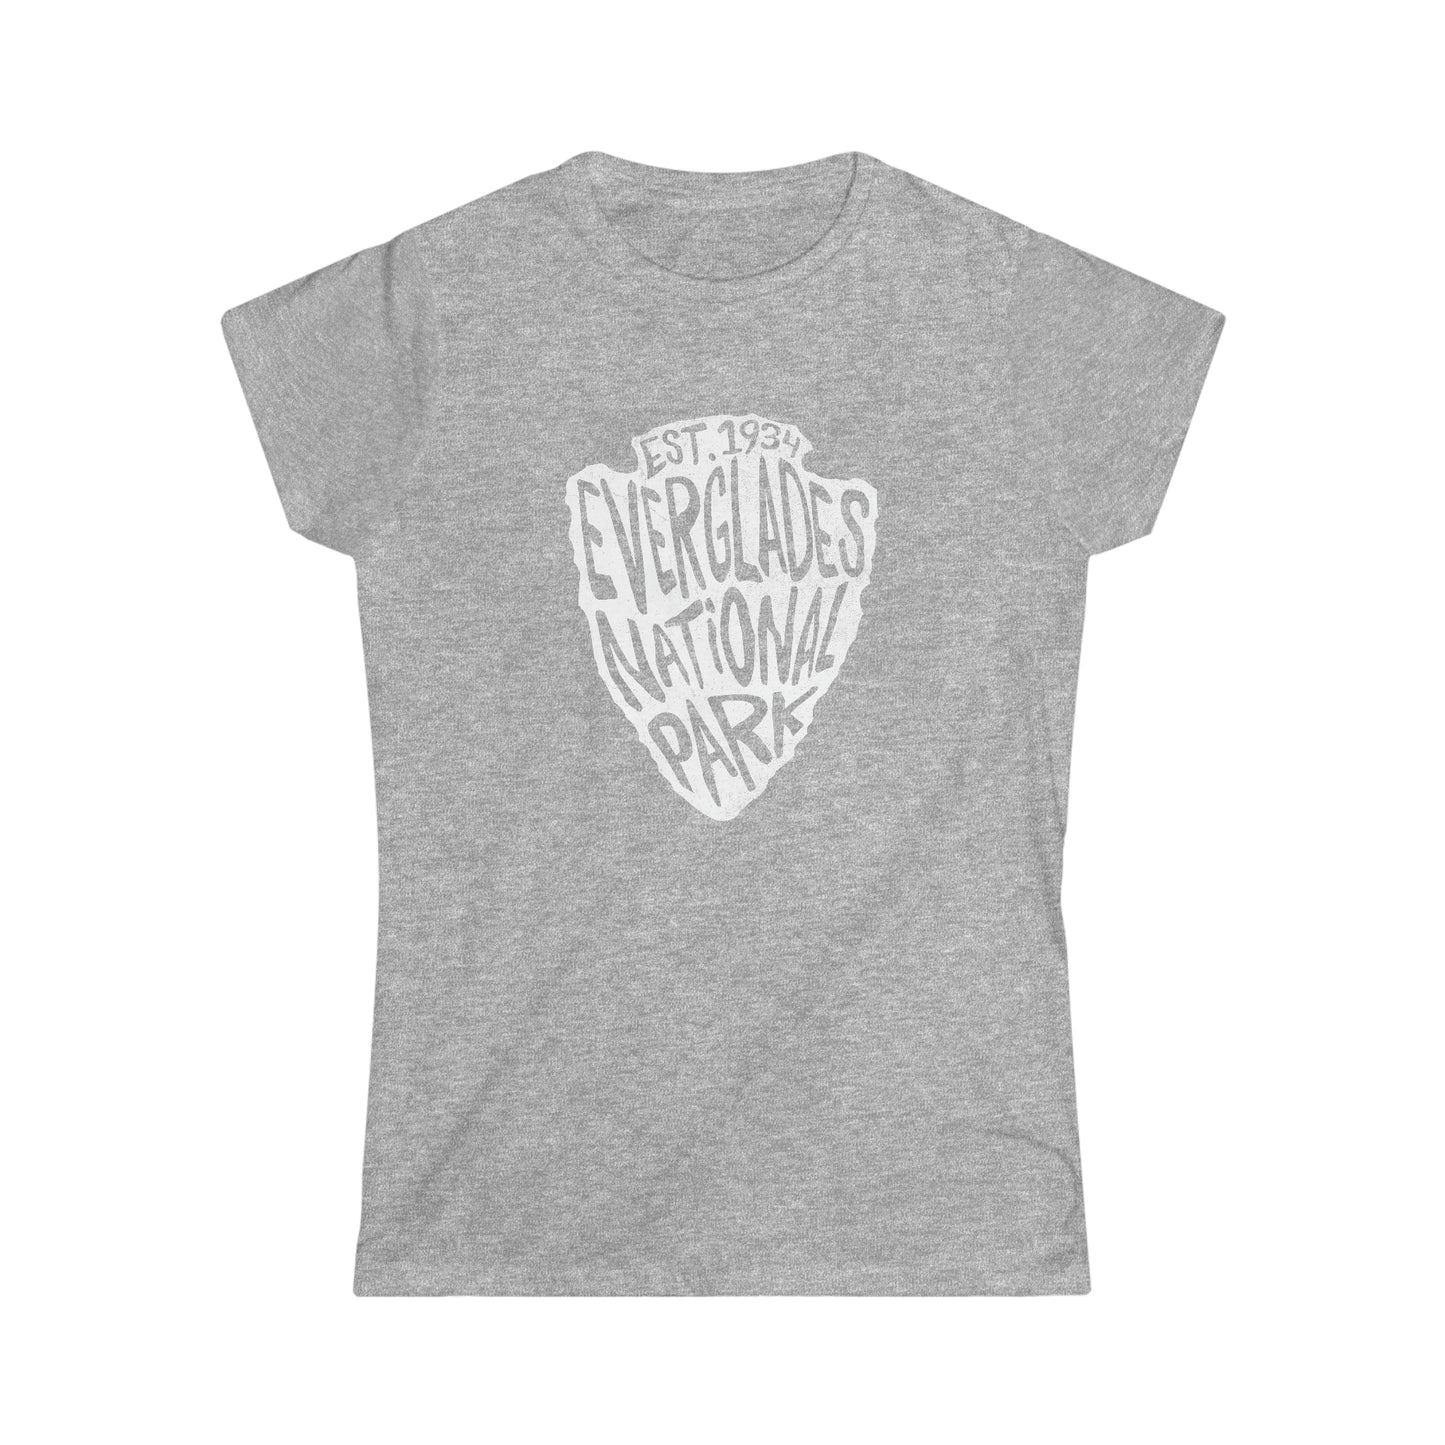 Everglades National Park Women's T-Shirt - Arrowhead Design